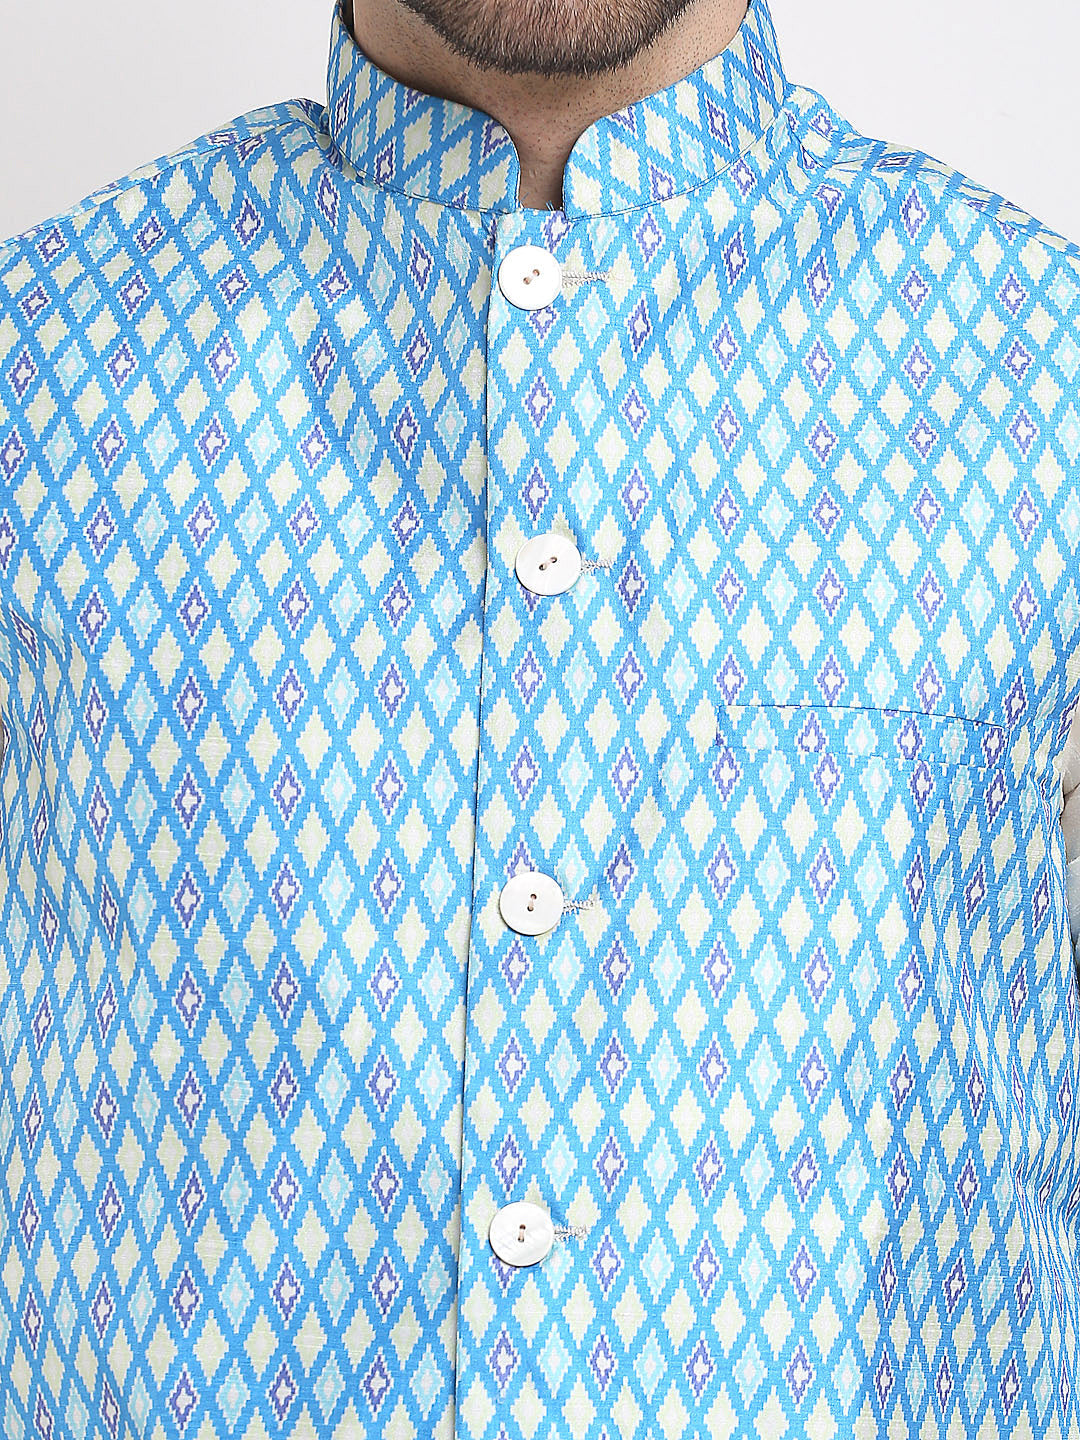 Jompers Men's Blue Ikat Printed Nehru Jacket